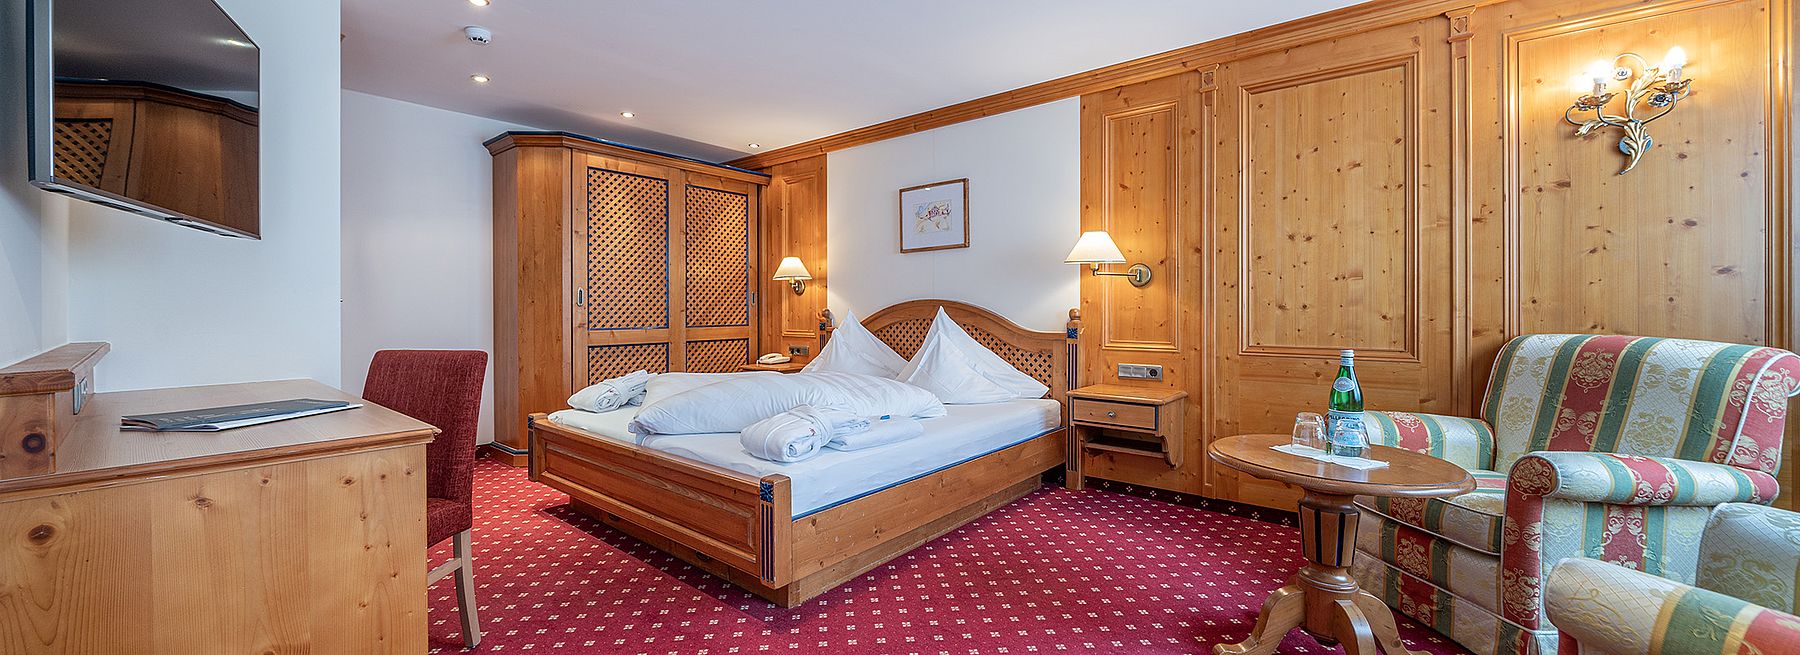 Ski Hotel Edelweiss Hochsölden room 101